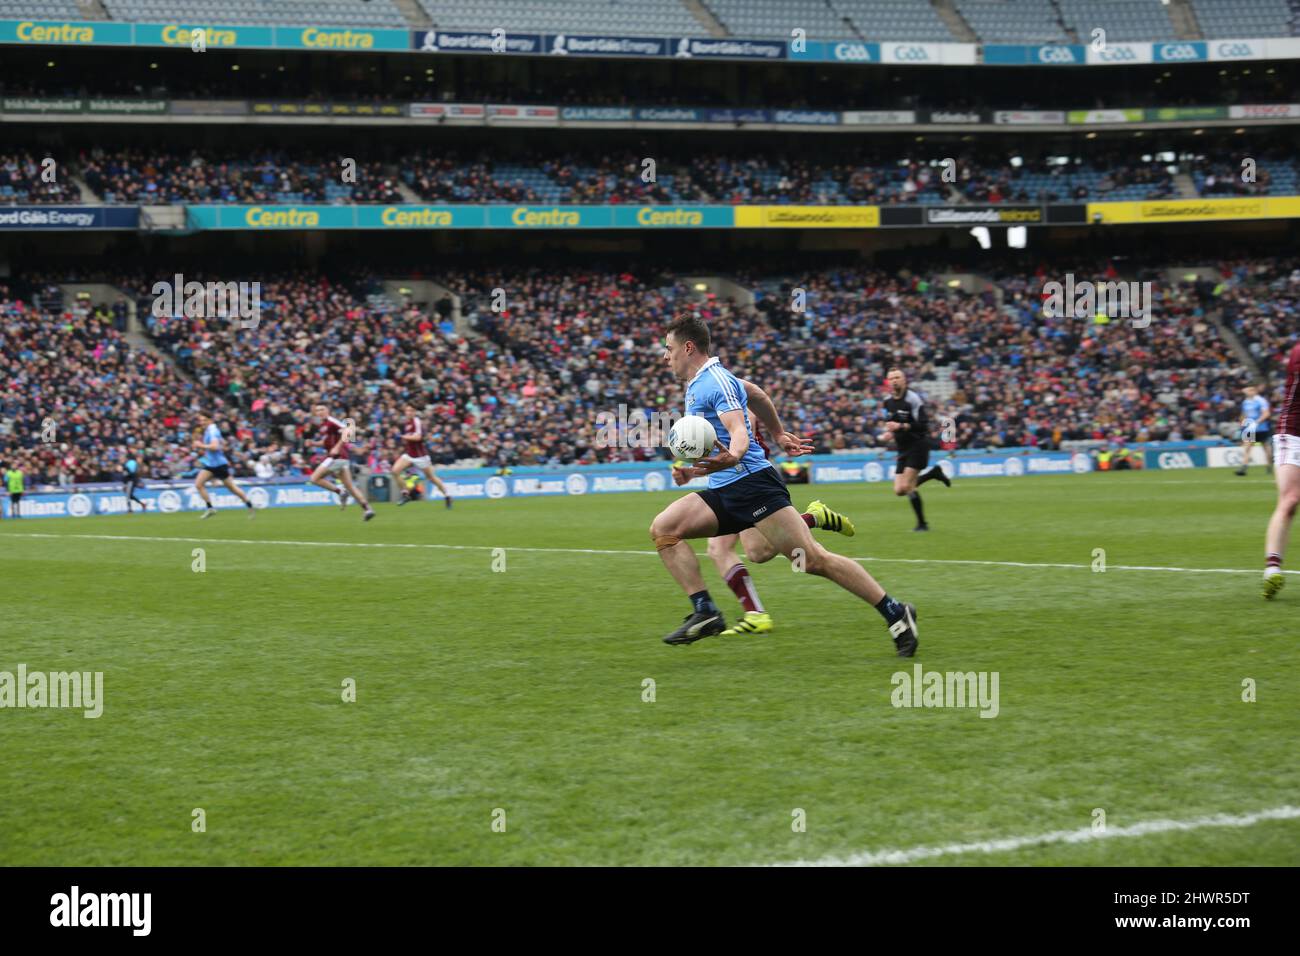 Une scène d'un match de football gaélique à Dublin, en Irlande, en tant que joueur de Dublin porte le ballon en avant. Banque D'Images